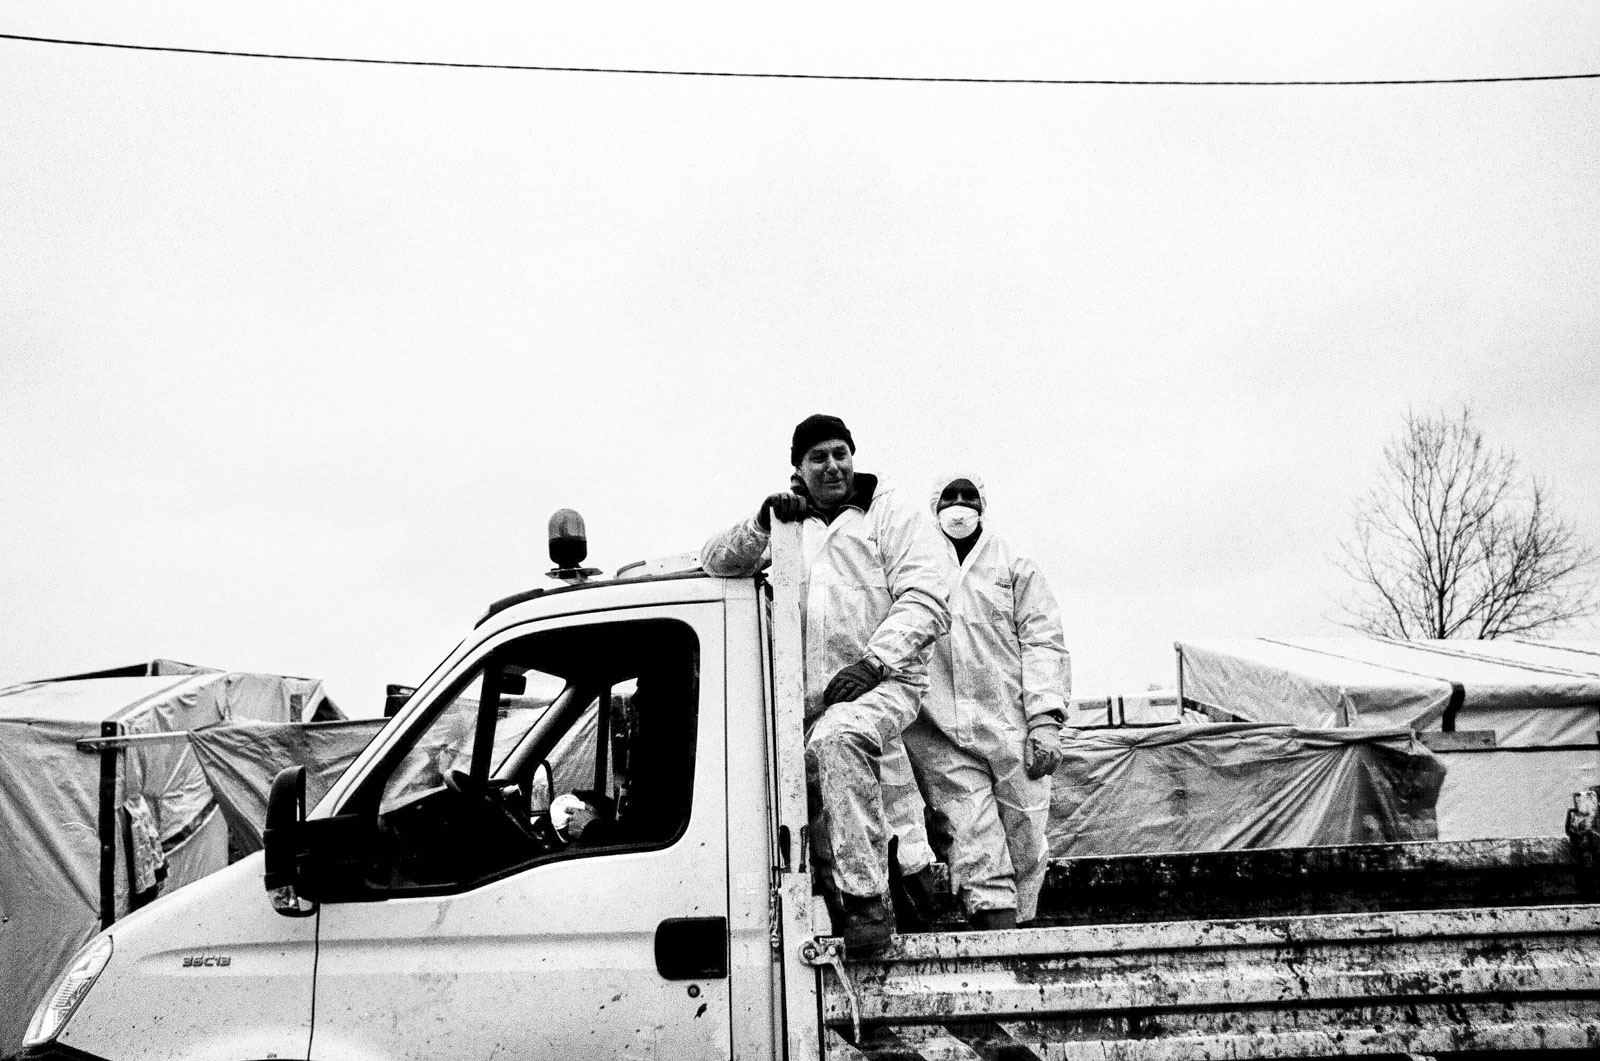 Mannen op vuilniswagen - Calais